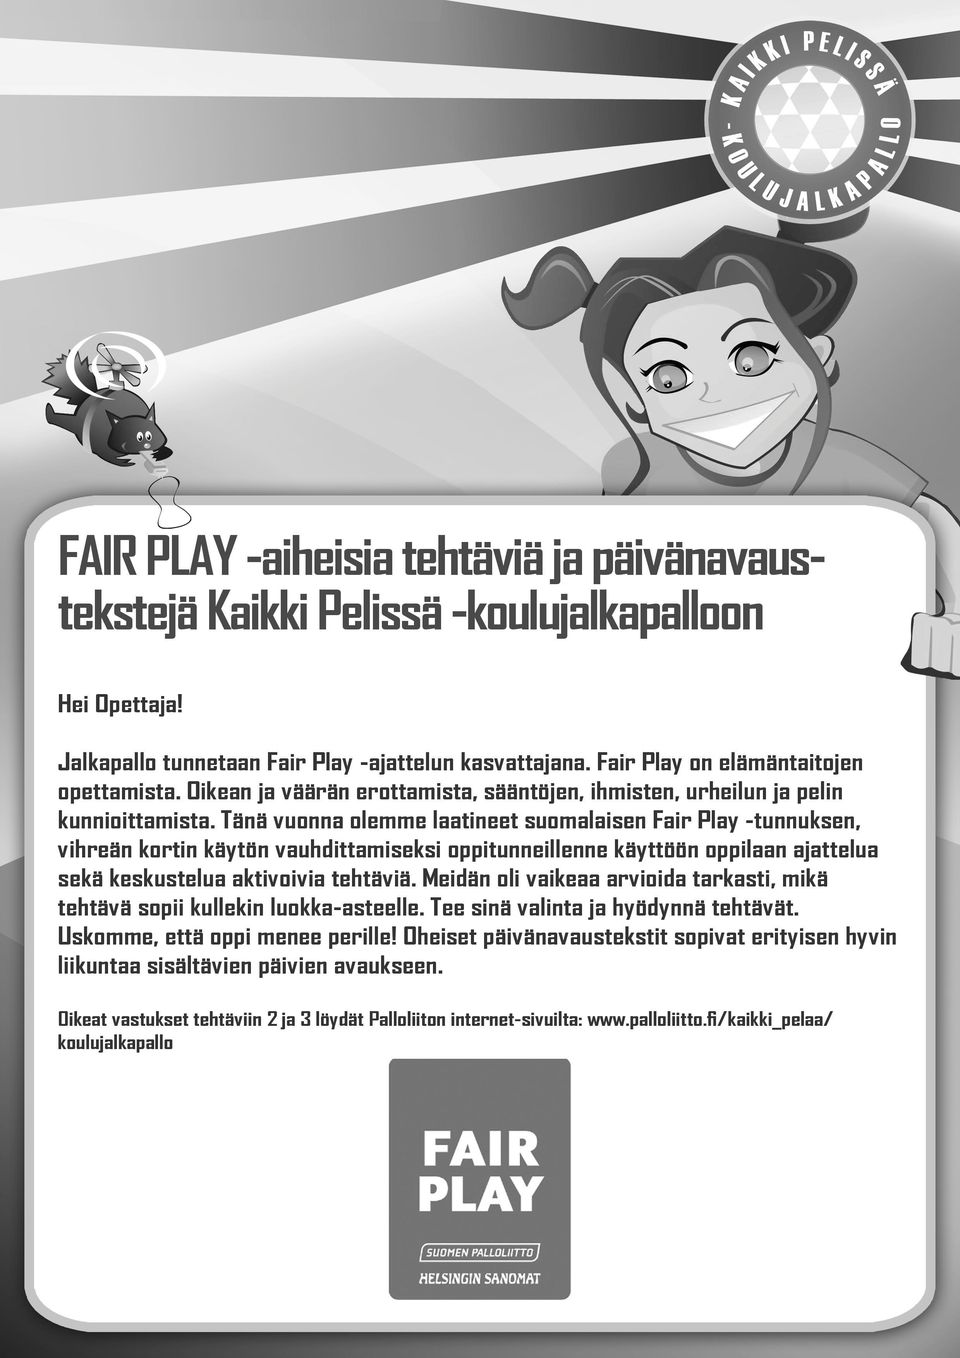 Tänä vuonna olemme laatineet suomalaisen Fair Play -tunnuksen, vihreän kortin käytön vauhdittamiseksi oppitunneillenne käyttöön oppilaan ajattelua sekä keskustelua aktivoivia tehtäviä.